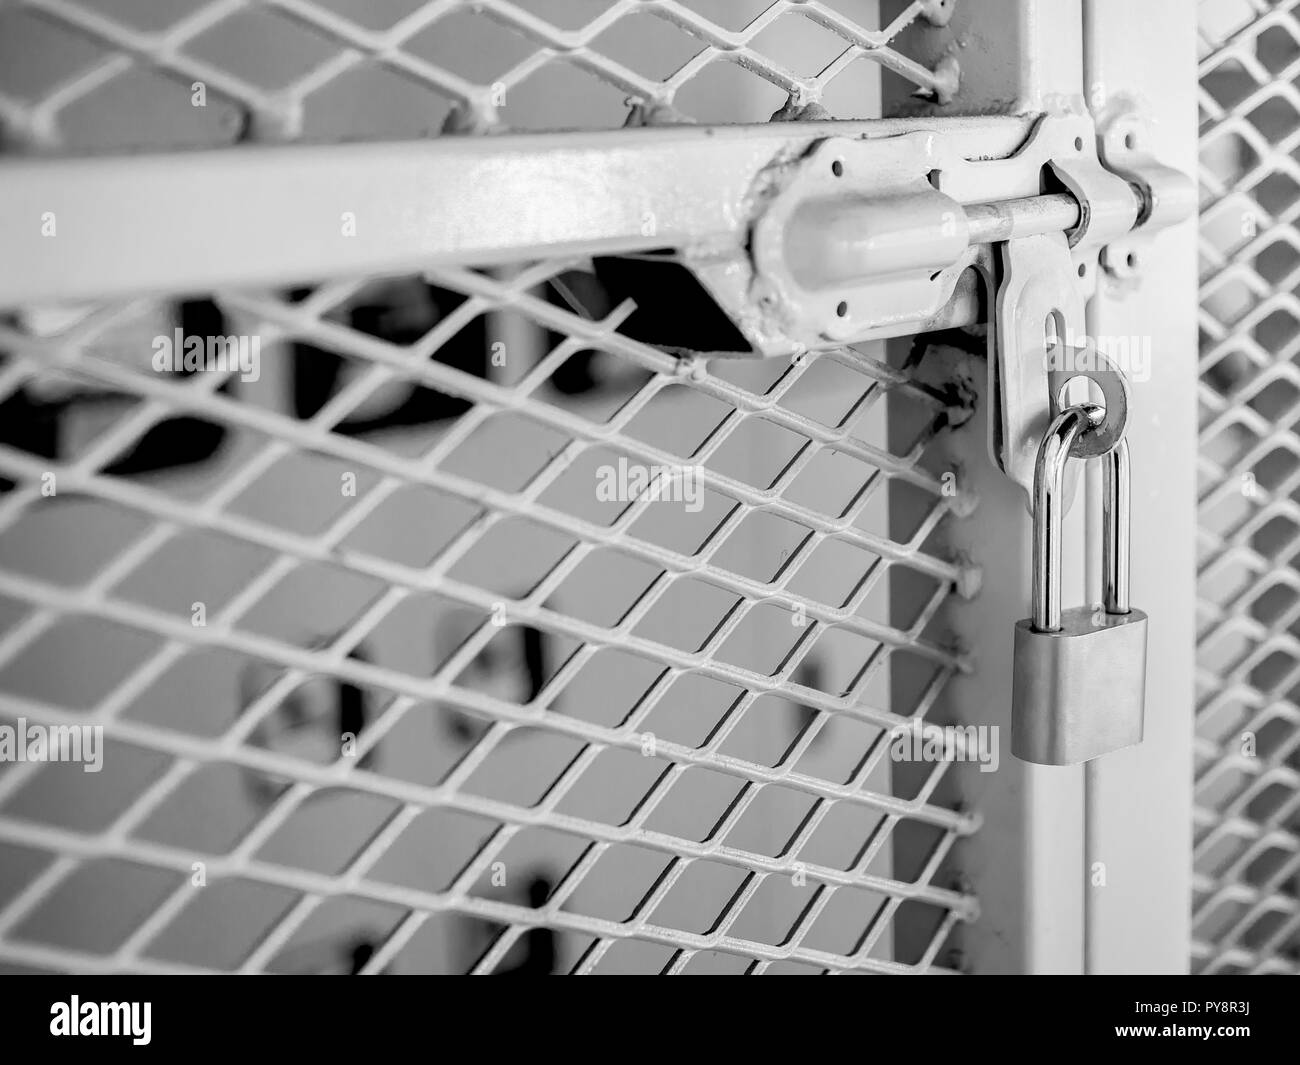 La clé blanche verrouillé sur la poignée sur la clôture métallique porte menant à la salle du système électrique. Banque D'Images